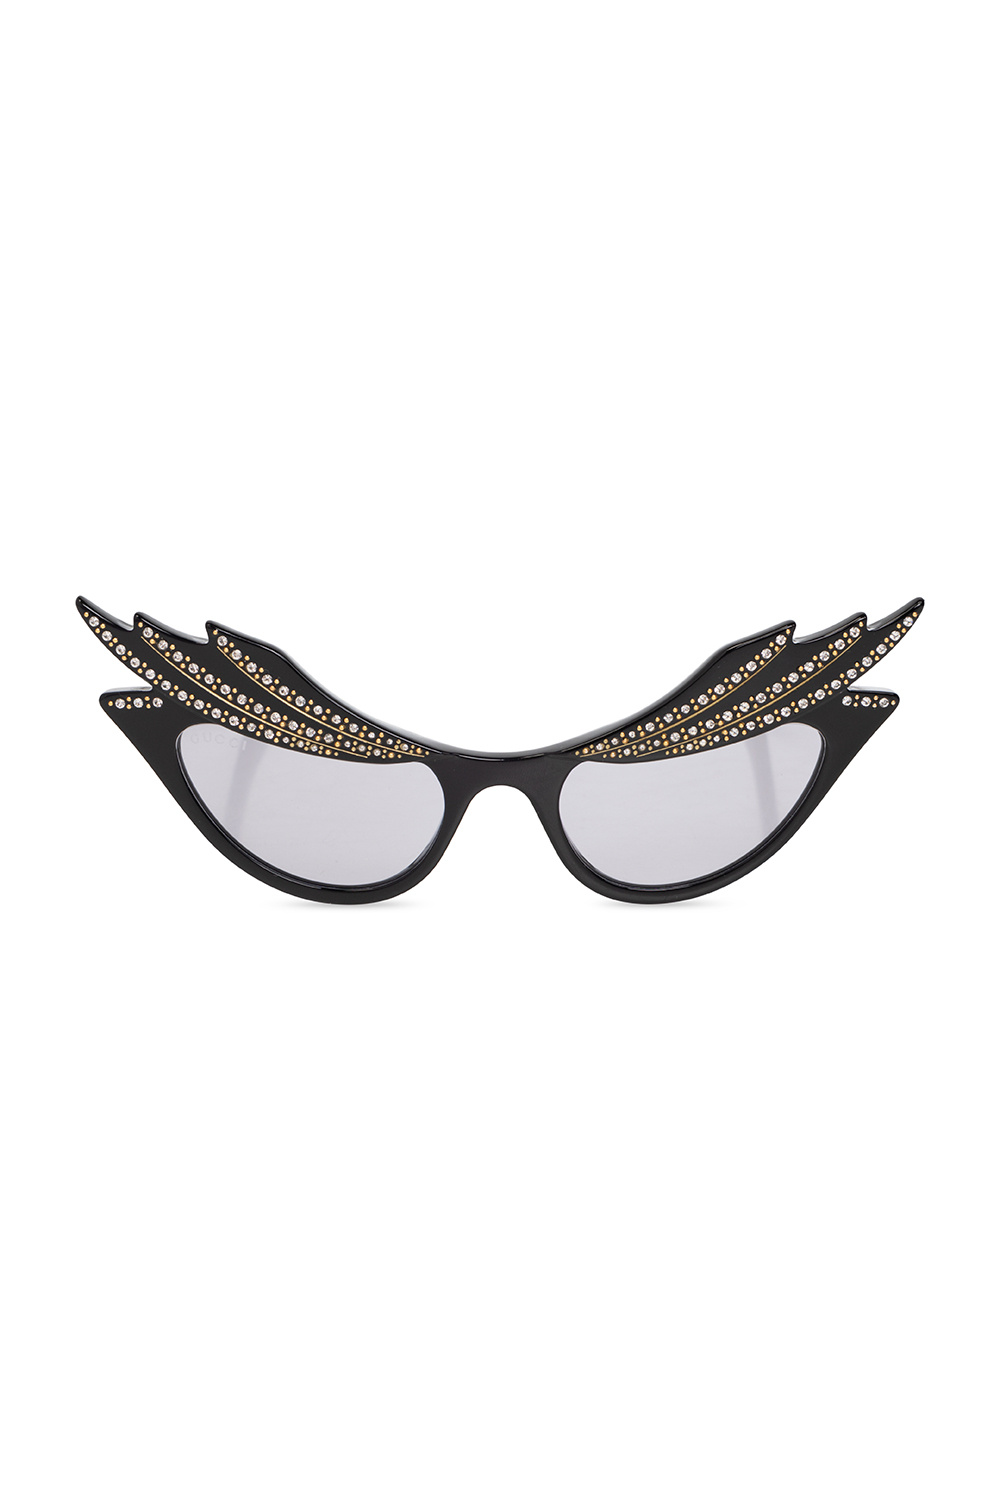 Gucci SL M70 cat-eye sunglasses